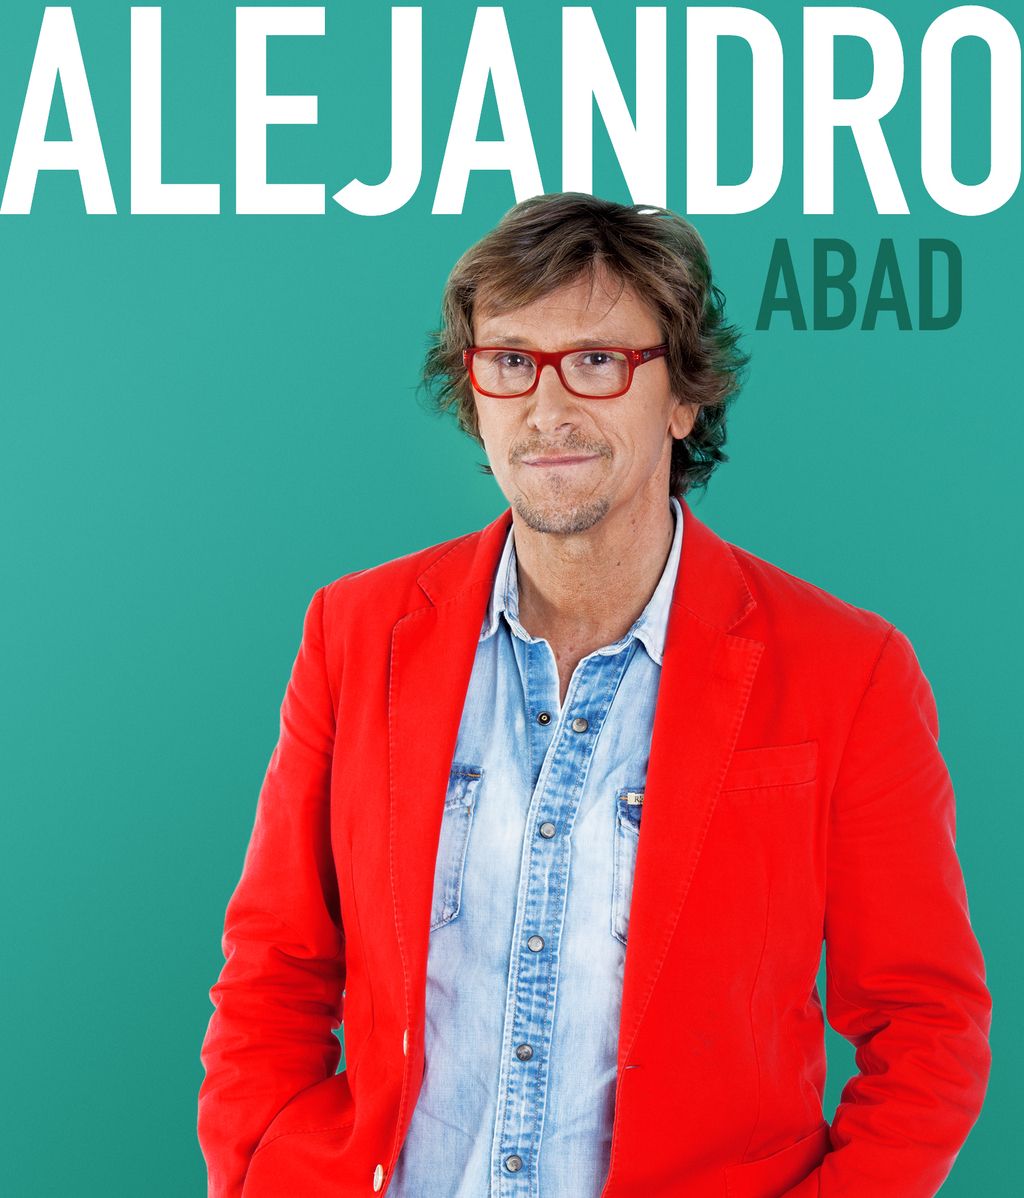 Alejandro Abad, 51 años